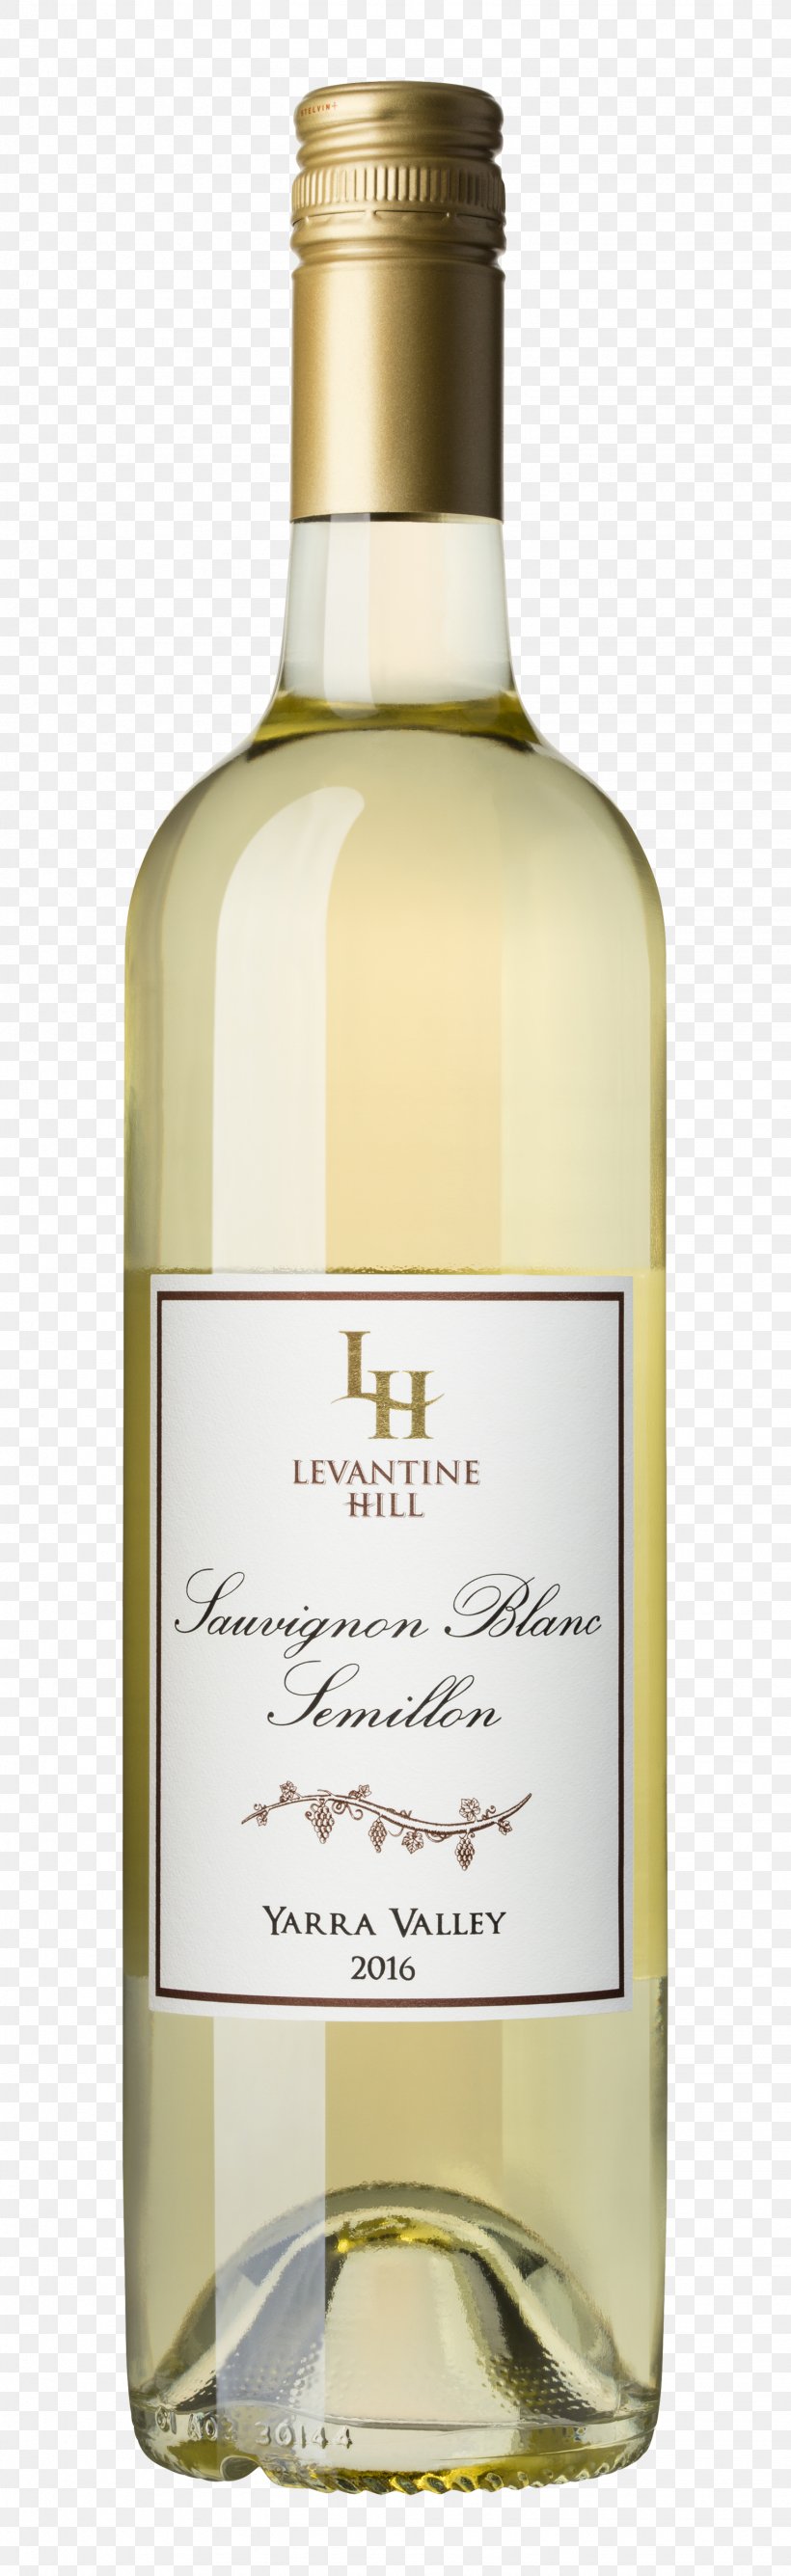 White Wine Auxerrois Blanc Sauvignon Blanc Sémillon, PNG, 1535x5000px, White Wine, Alcoholic Beverage, Bottle, Cabernet Franc, Cabernet Sauvignon Download Free